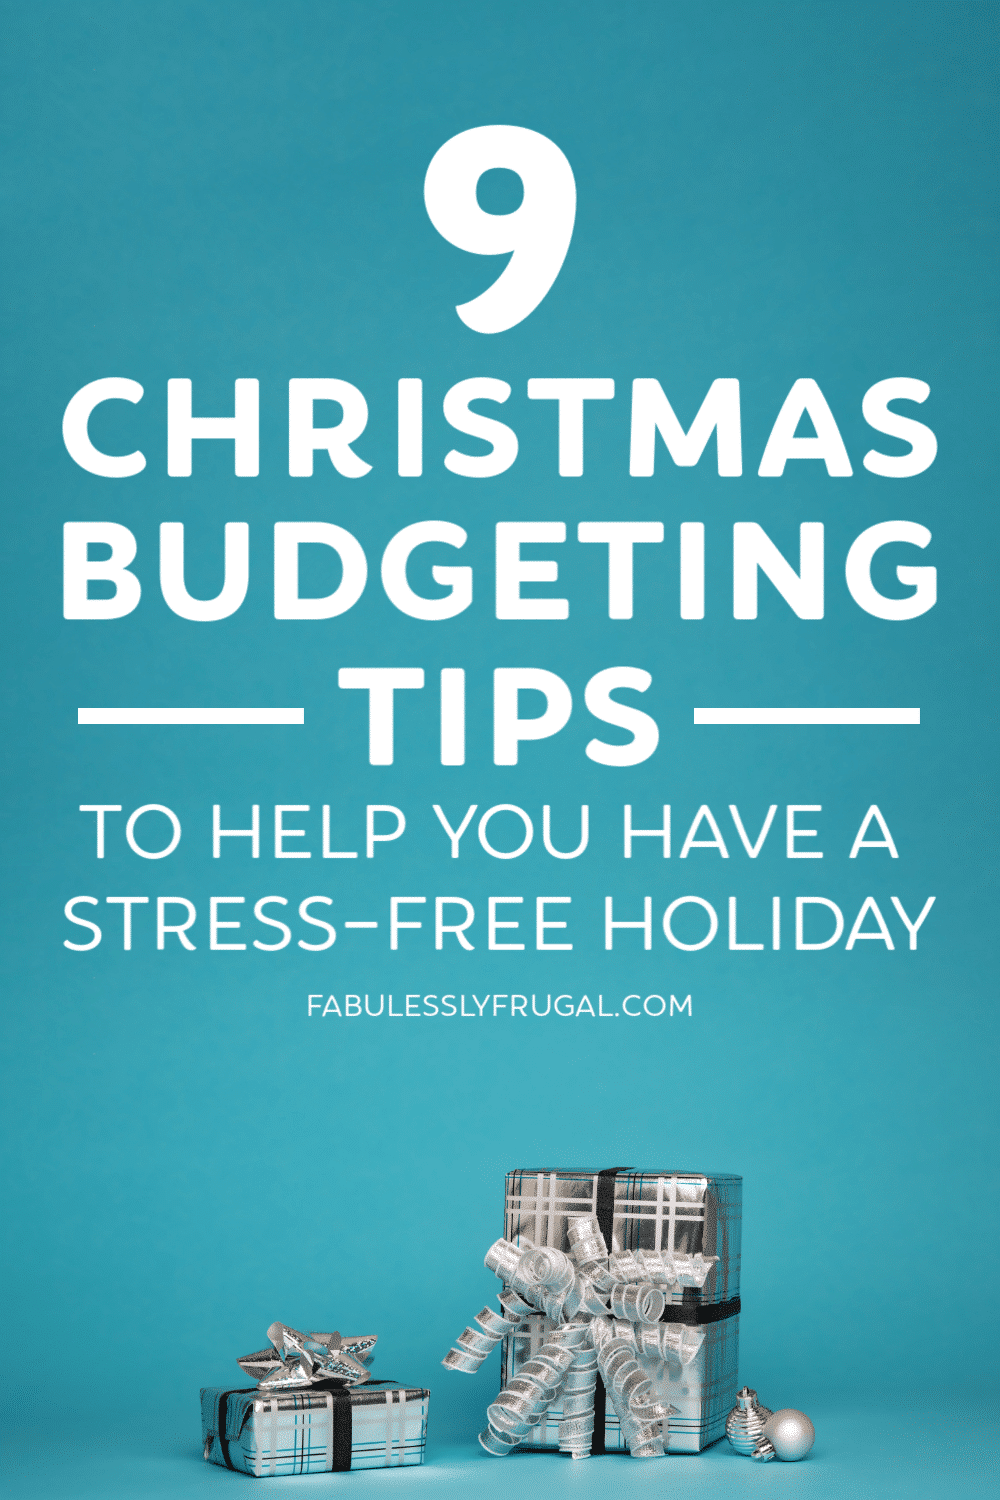 Christmas budgeting tips